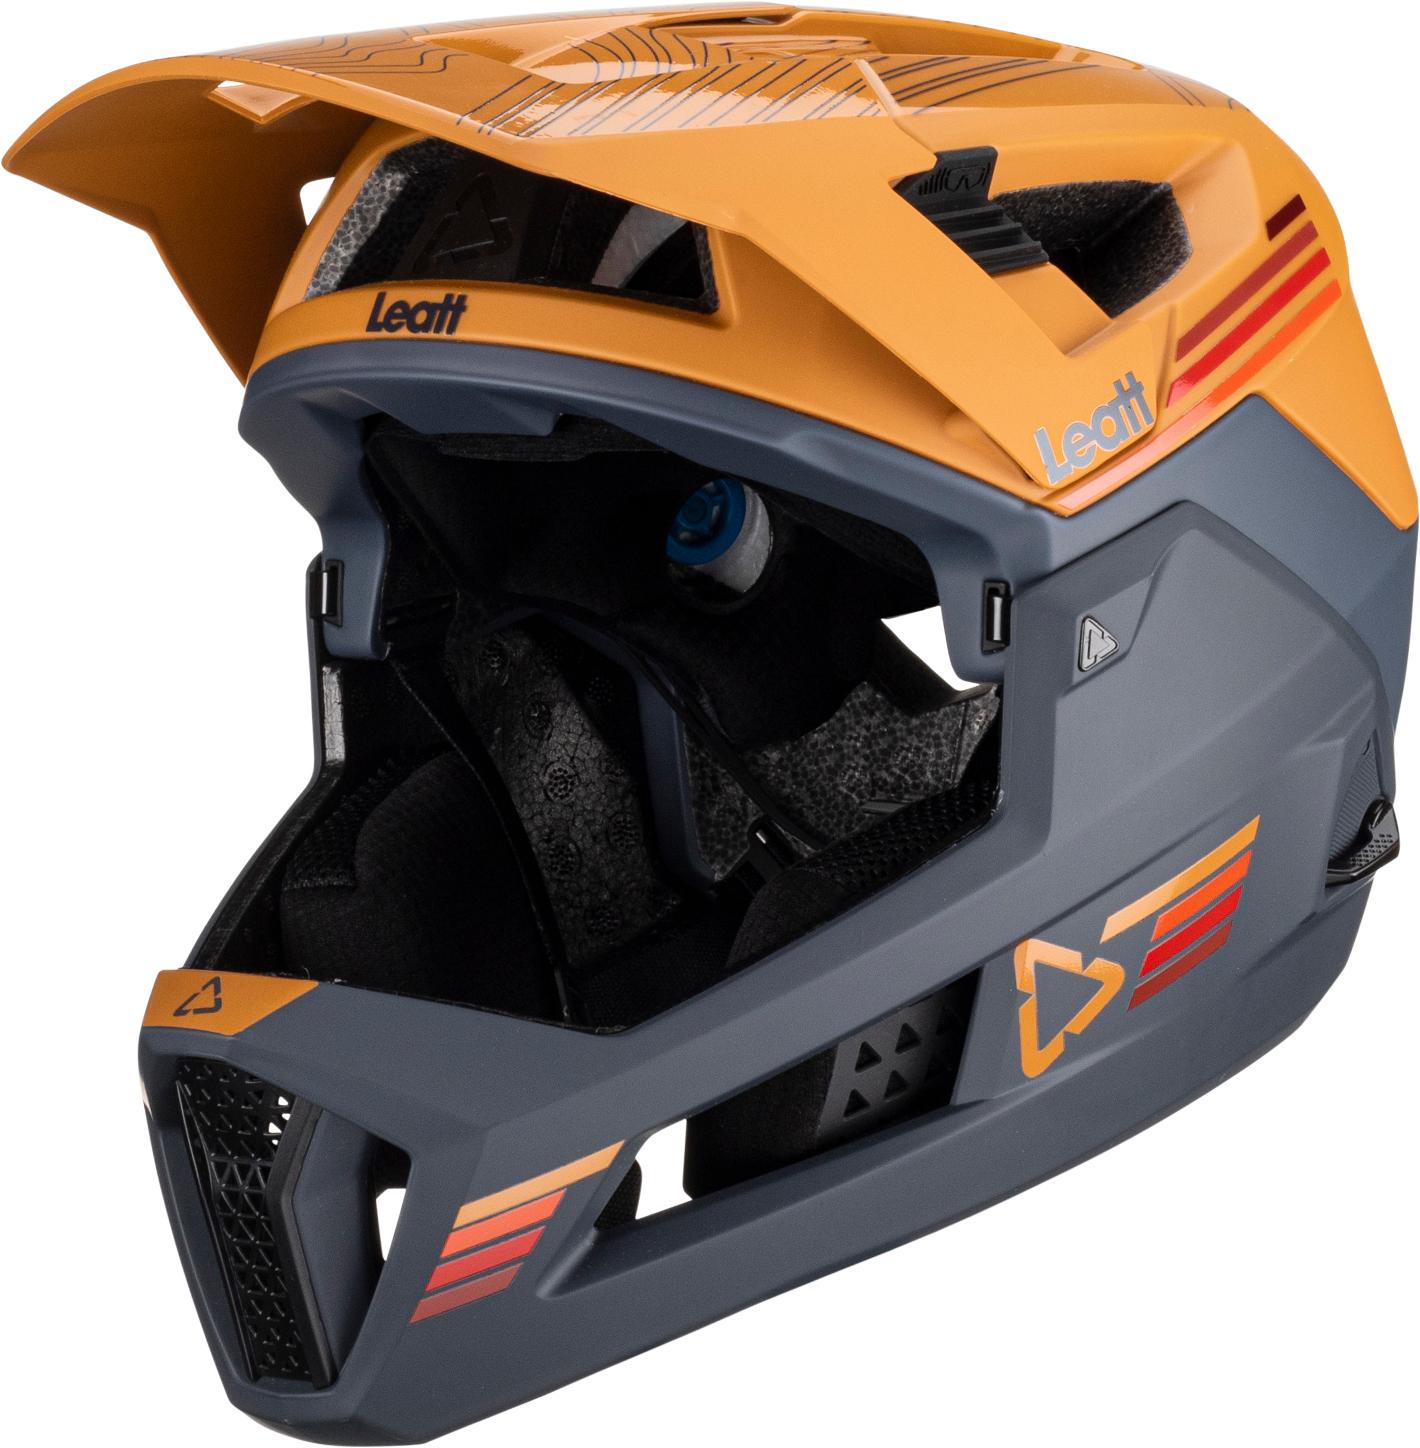 Leatt Mtb Enduro 4.0 Helmet - Suede